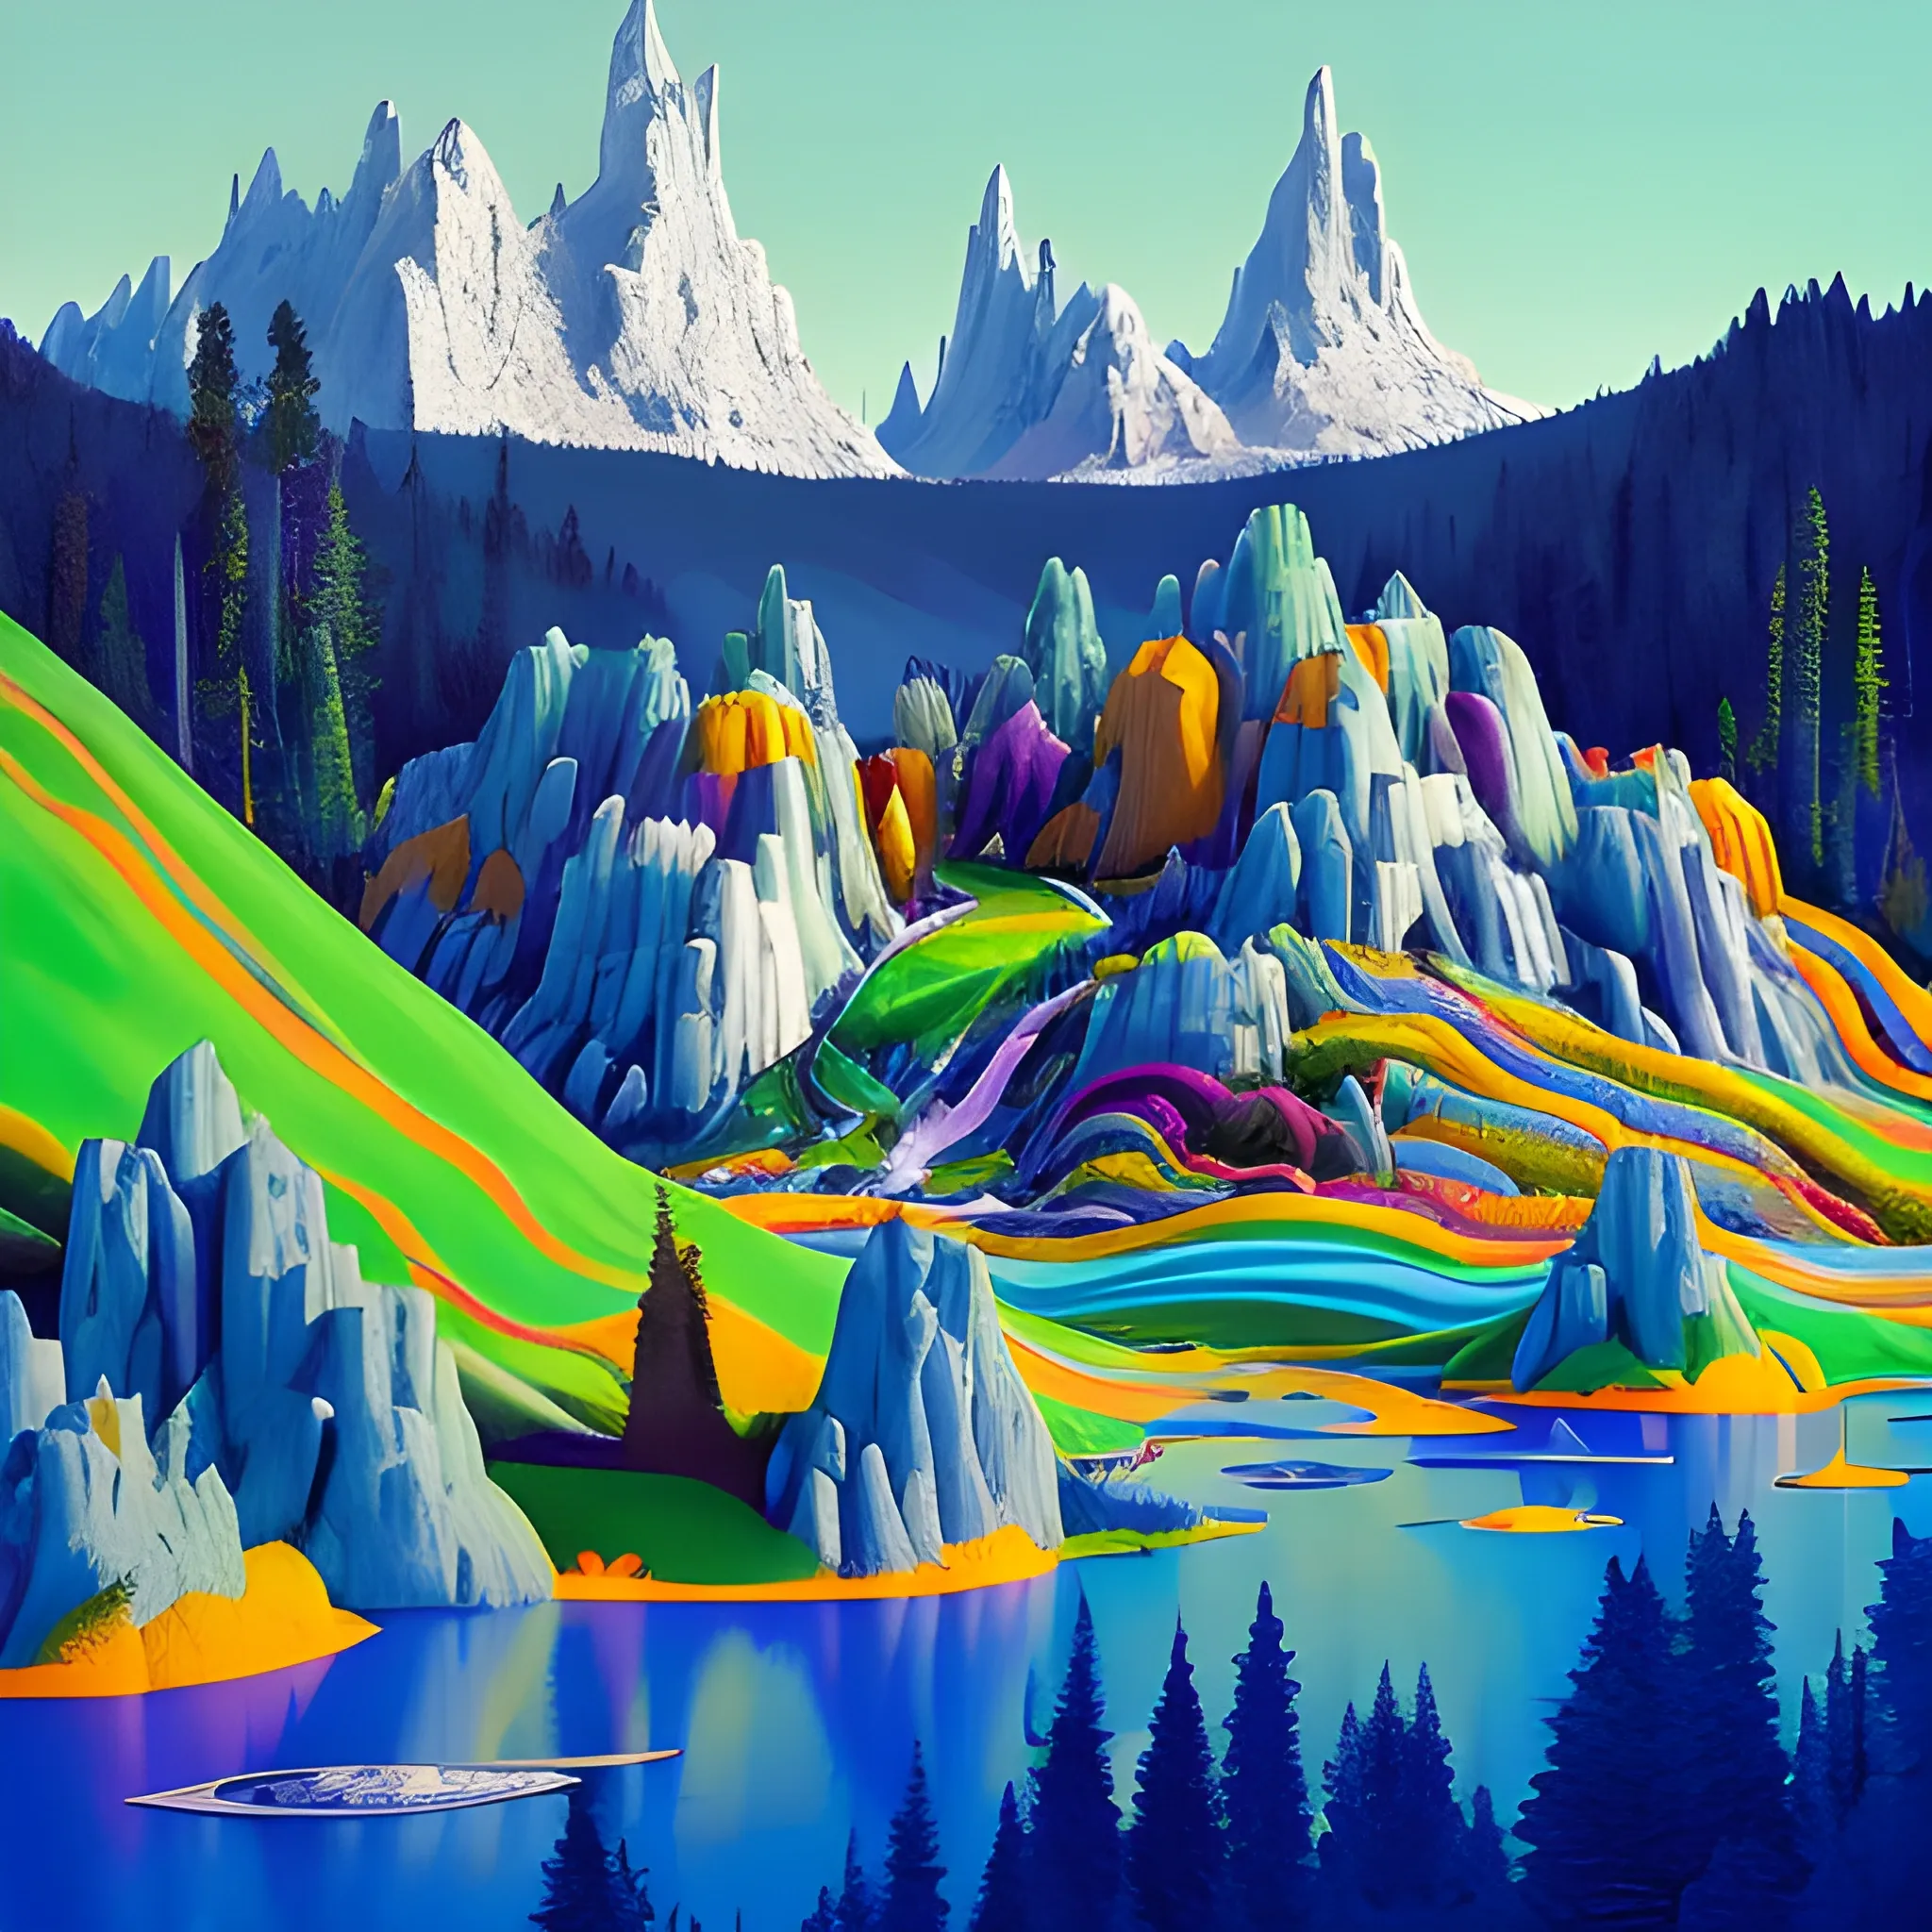 Paysage de science-fiction fantastique psychédélique très coloré avec des maison futuriste, des robots travailleurs, montagnes en arrière-plan avec des chutes d'eau colorés et animaux jouant autour d'un lac au pied des montagne arboré de grand arbres millénaires, Trippy